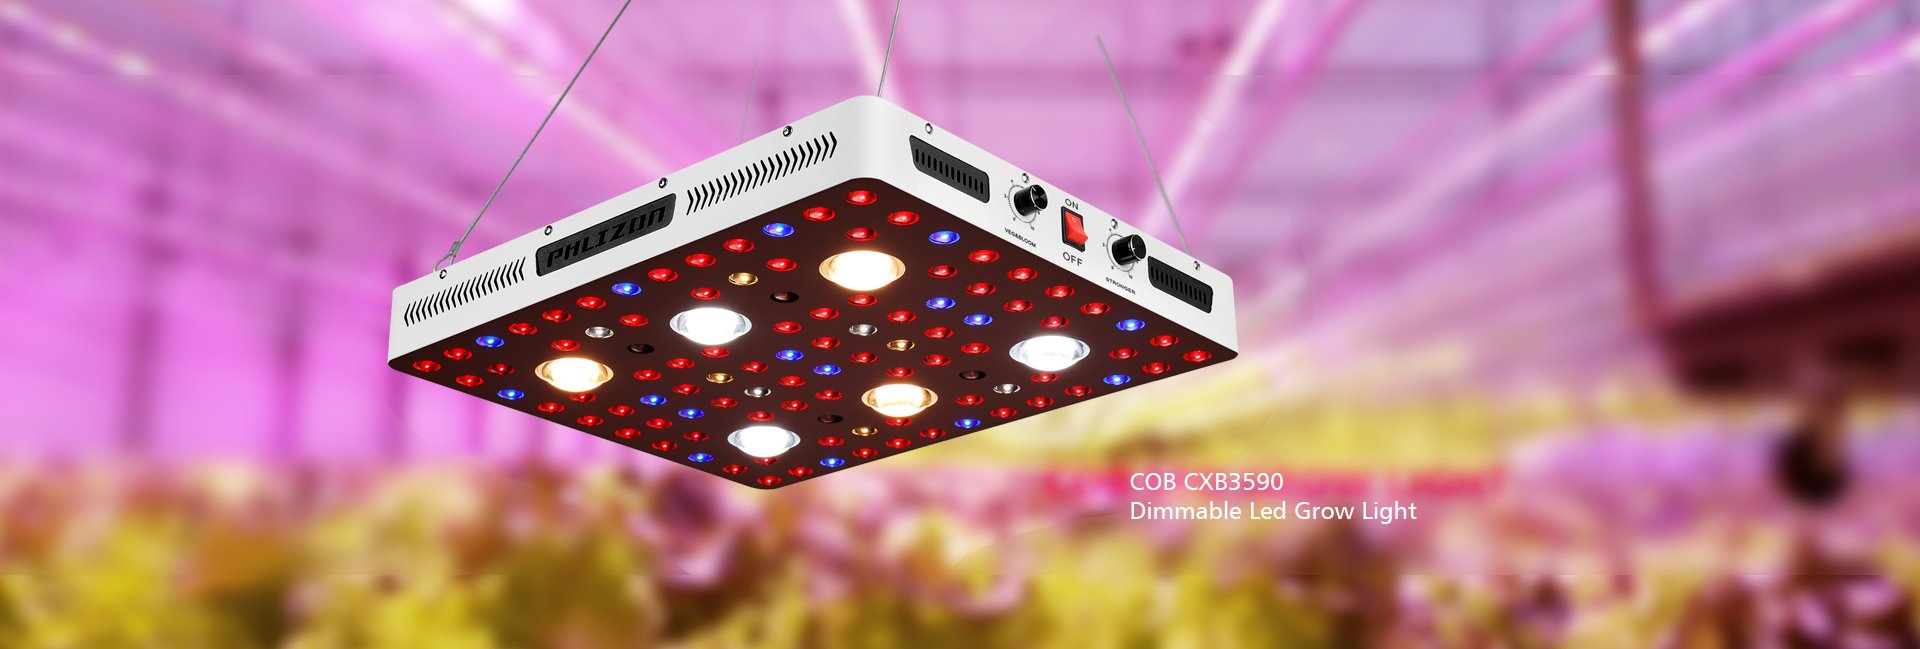 COB CXB3590 LED Plant Light